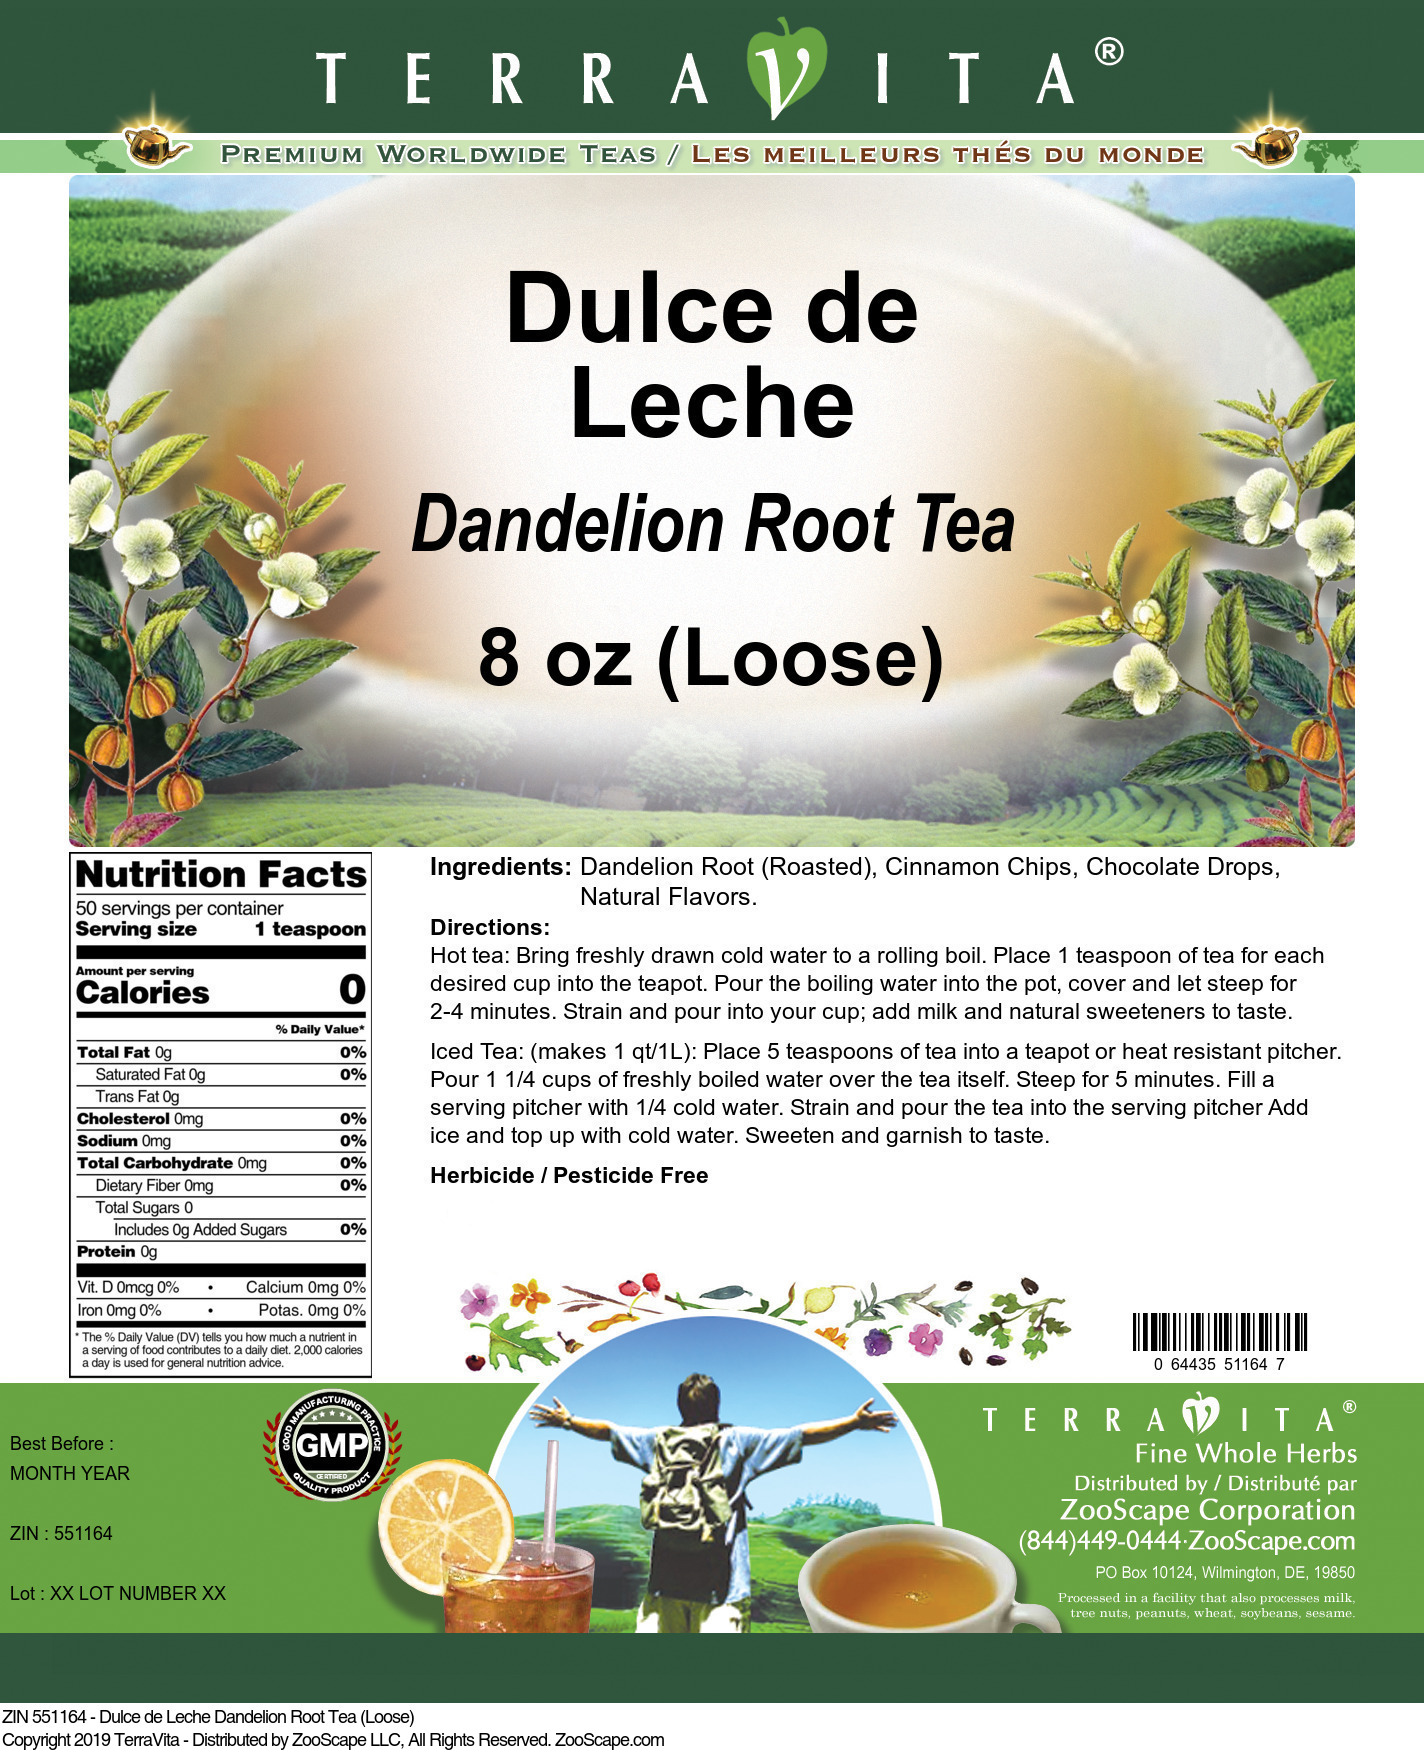 Dulce de Leche Dandelion Root Tea (Loose) - Label